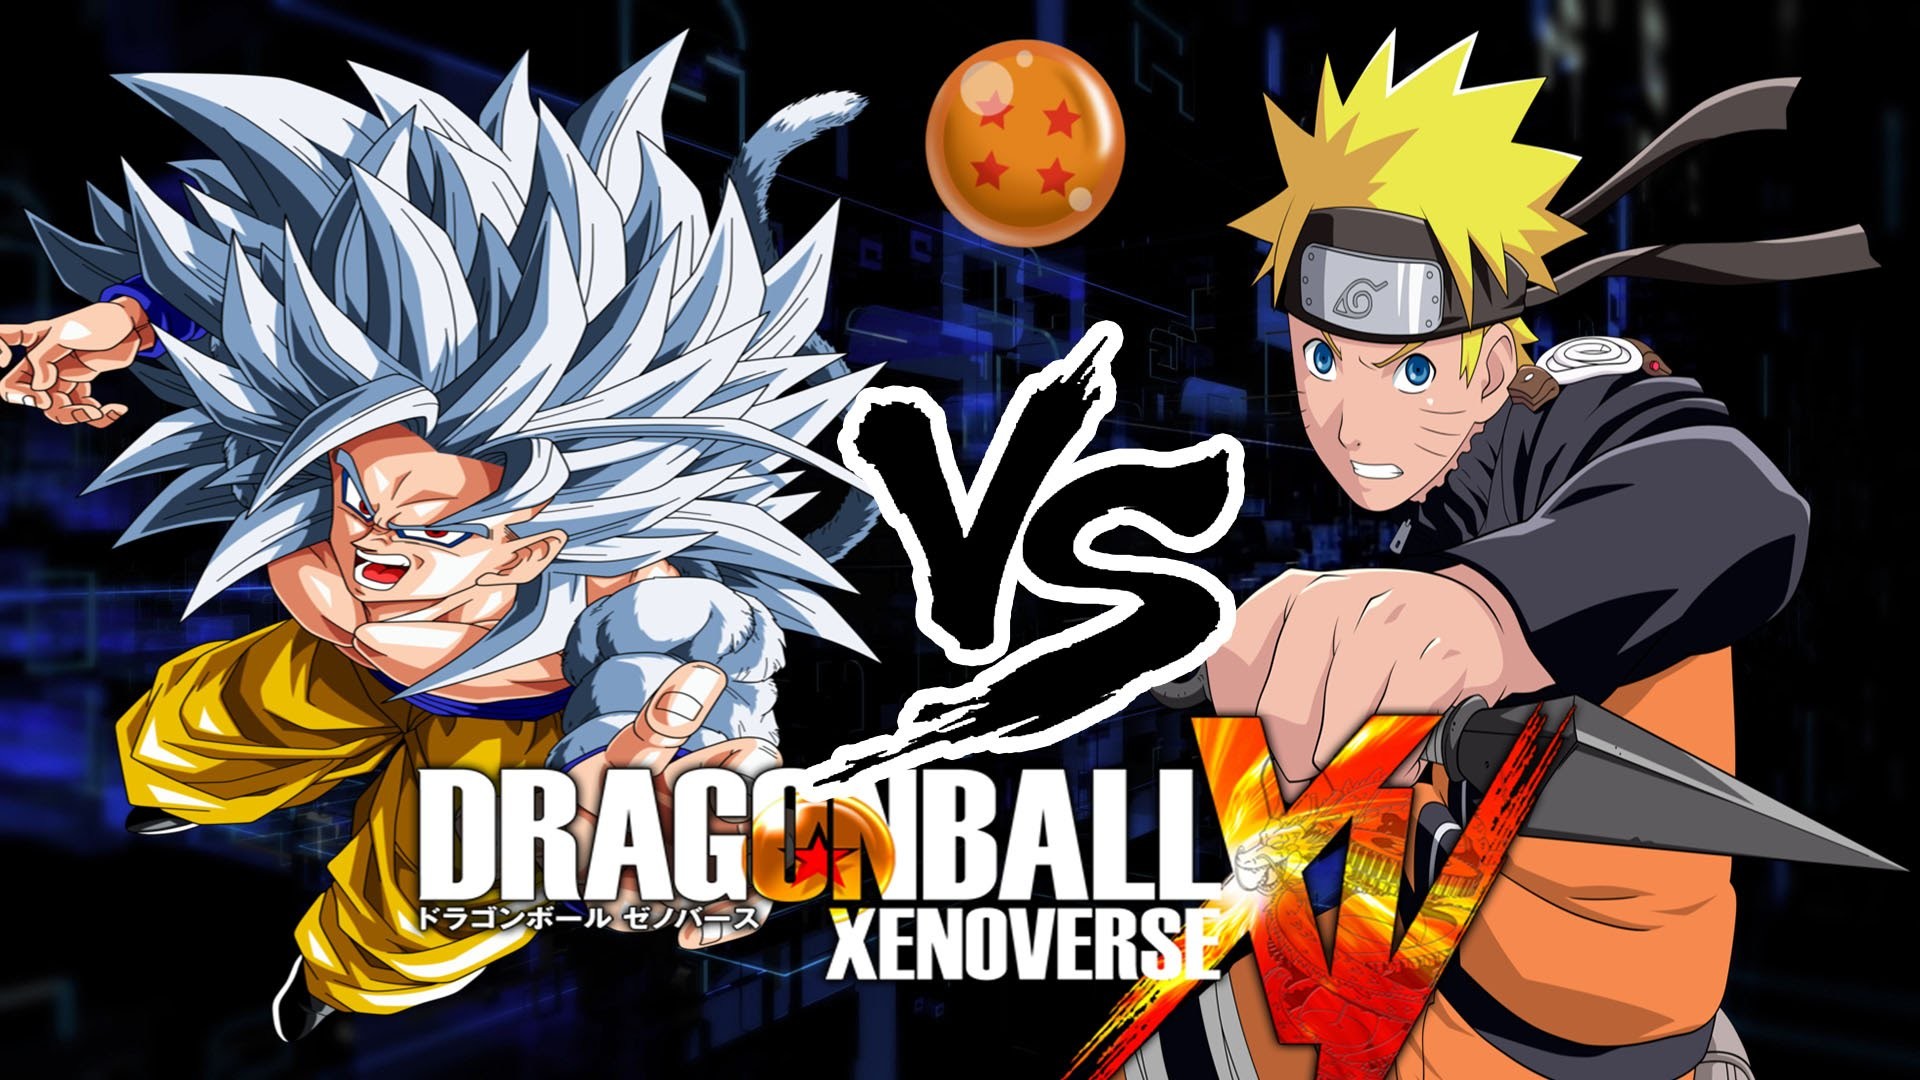 1920x1080 Dragon Ball Xenoverse [PC]: Super Saiyan 5 Goku vs Naruto (PC Mods) -  YouTube